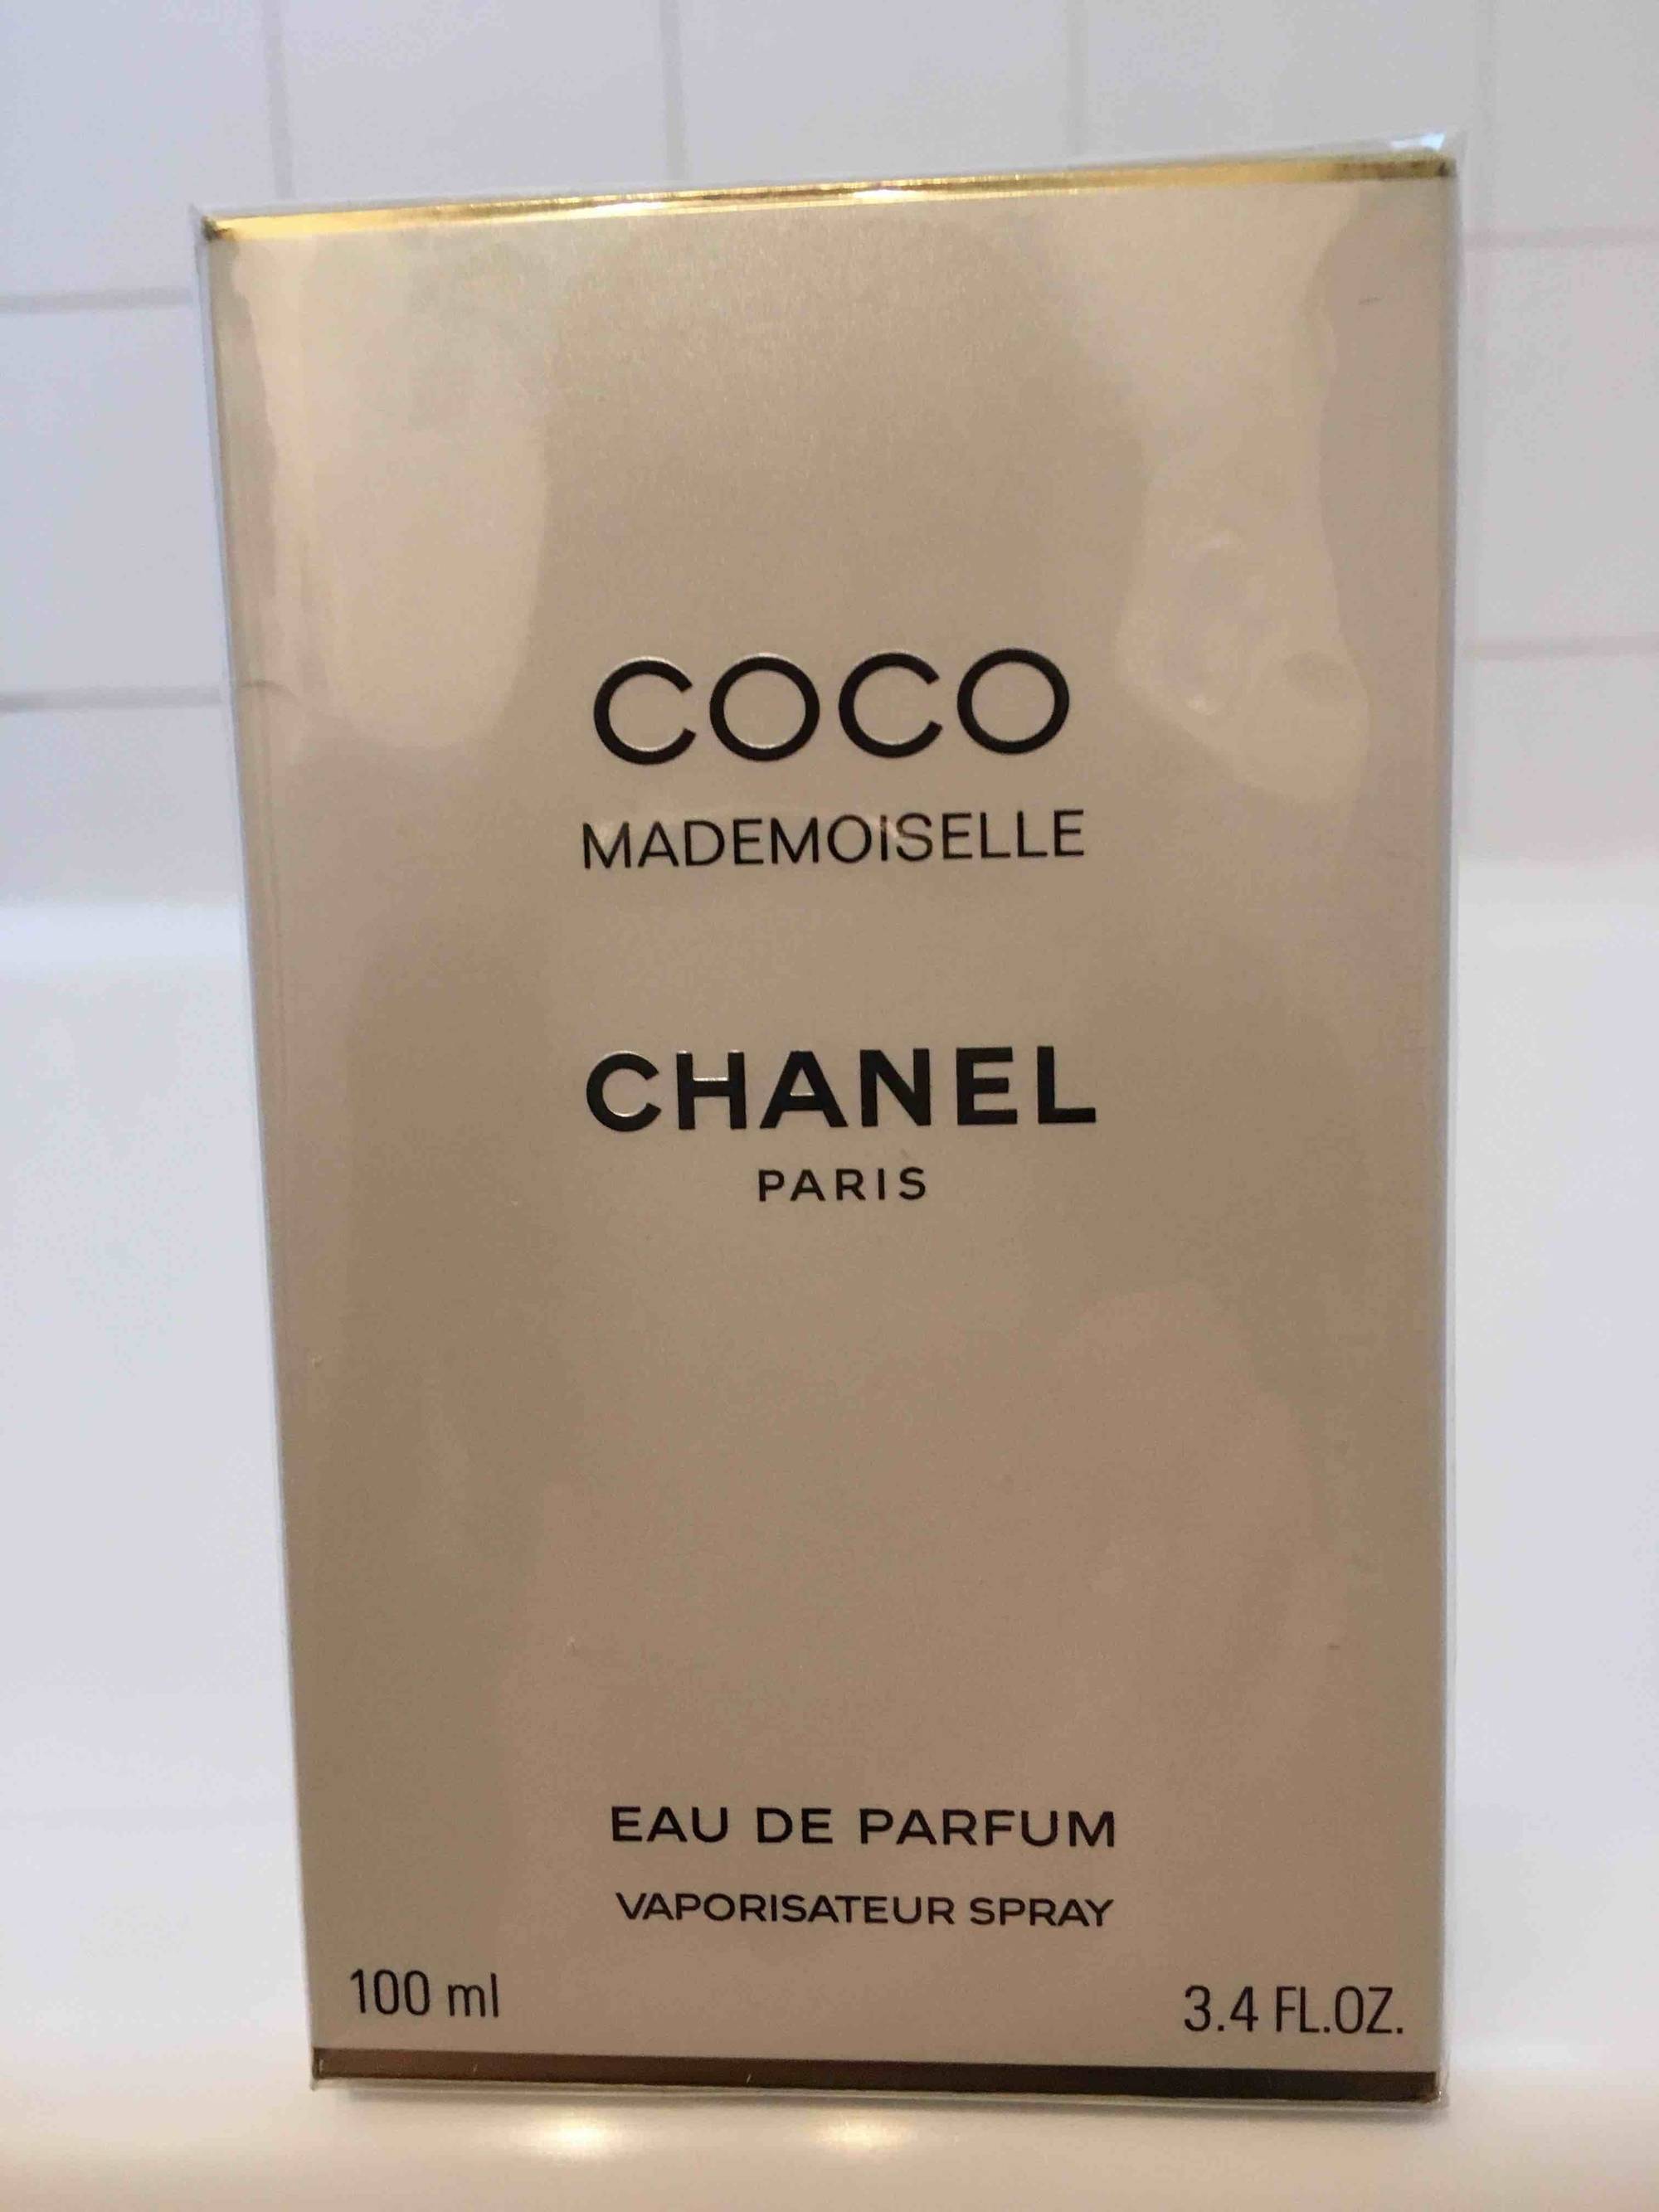 CHANEL - Coco mademoiselle eau de parfum